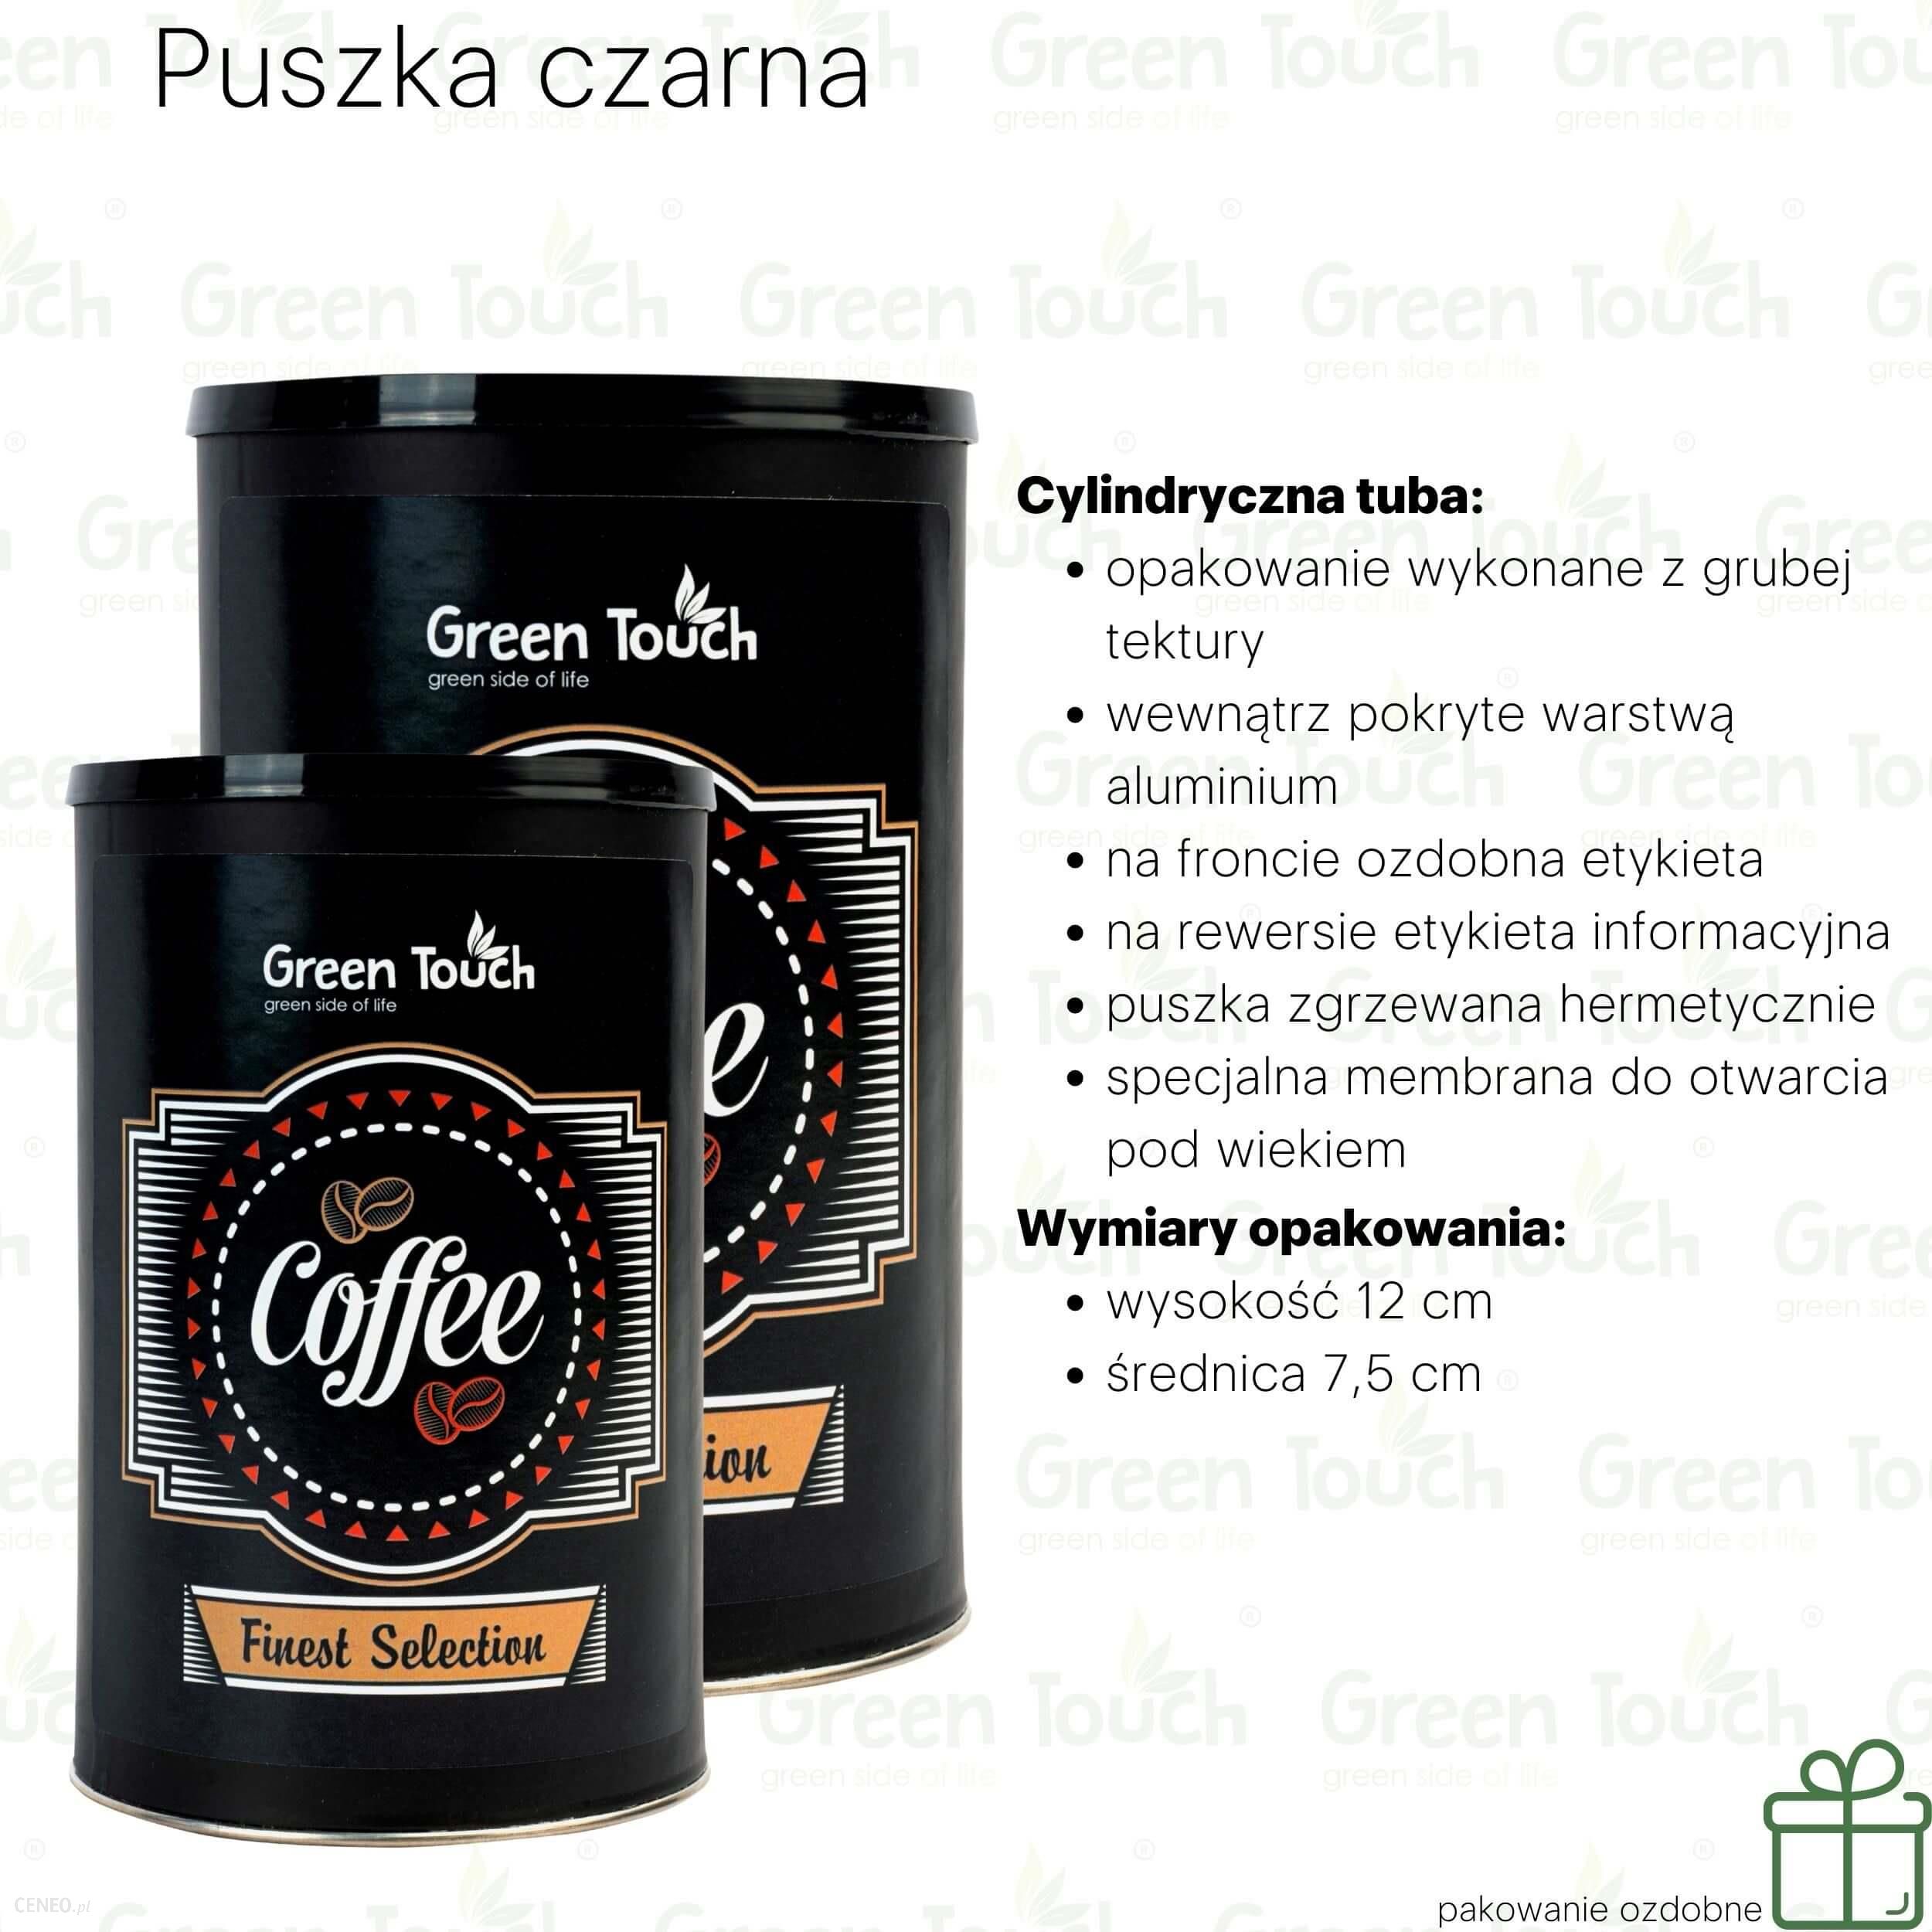 Progressive Kawa ziarnista Czekoladowa (Pakowanie ozdobne, Puszka czarna 140g)